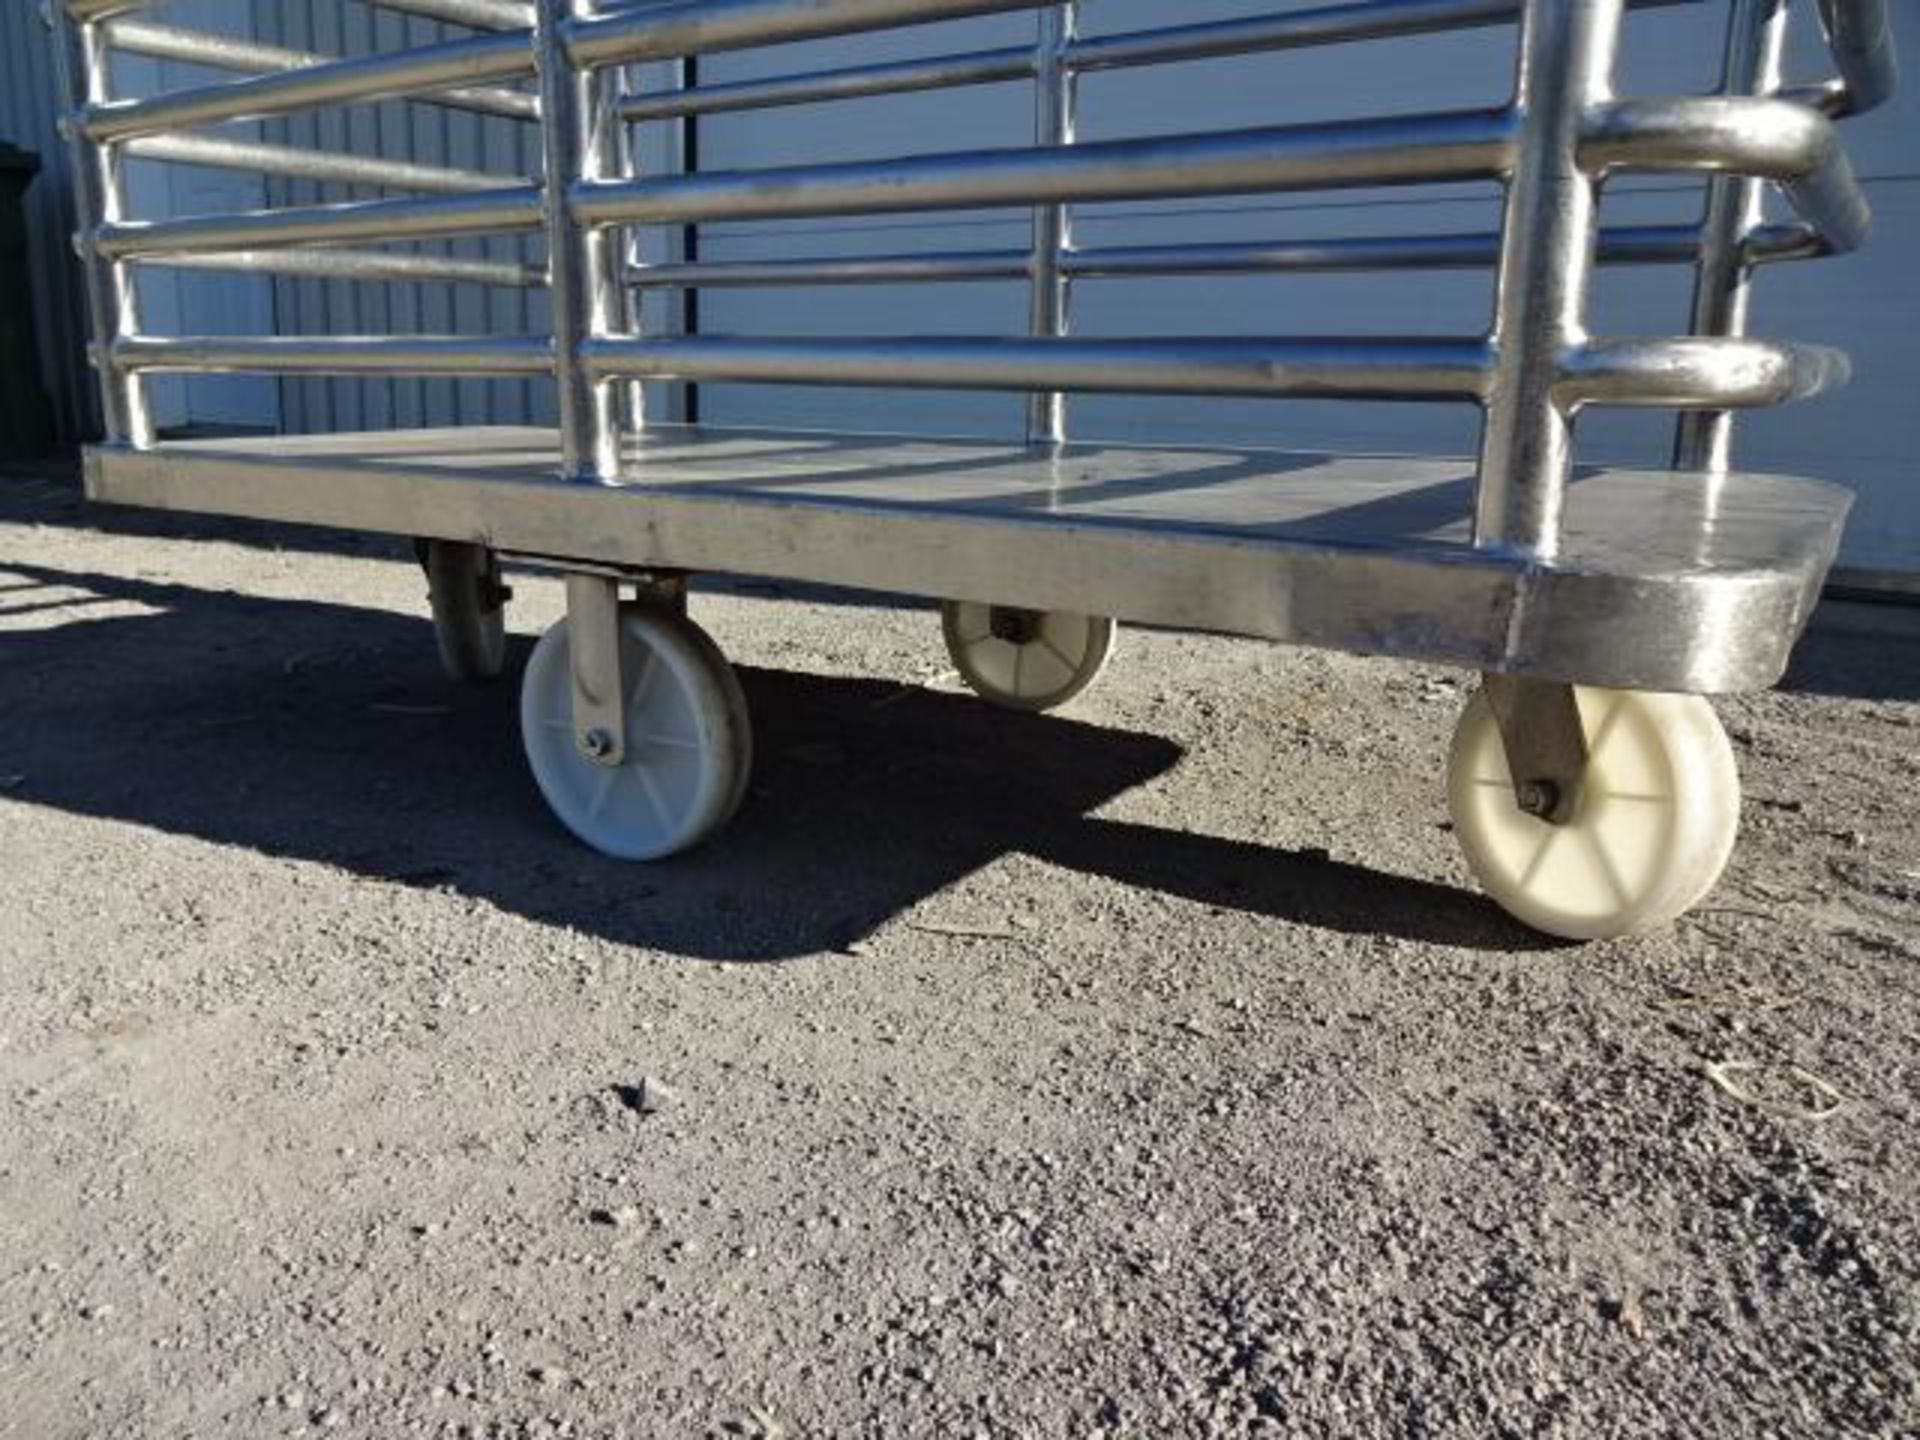 stainless steel trolleys - chariot en inox - Bild 6 aus 6